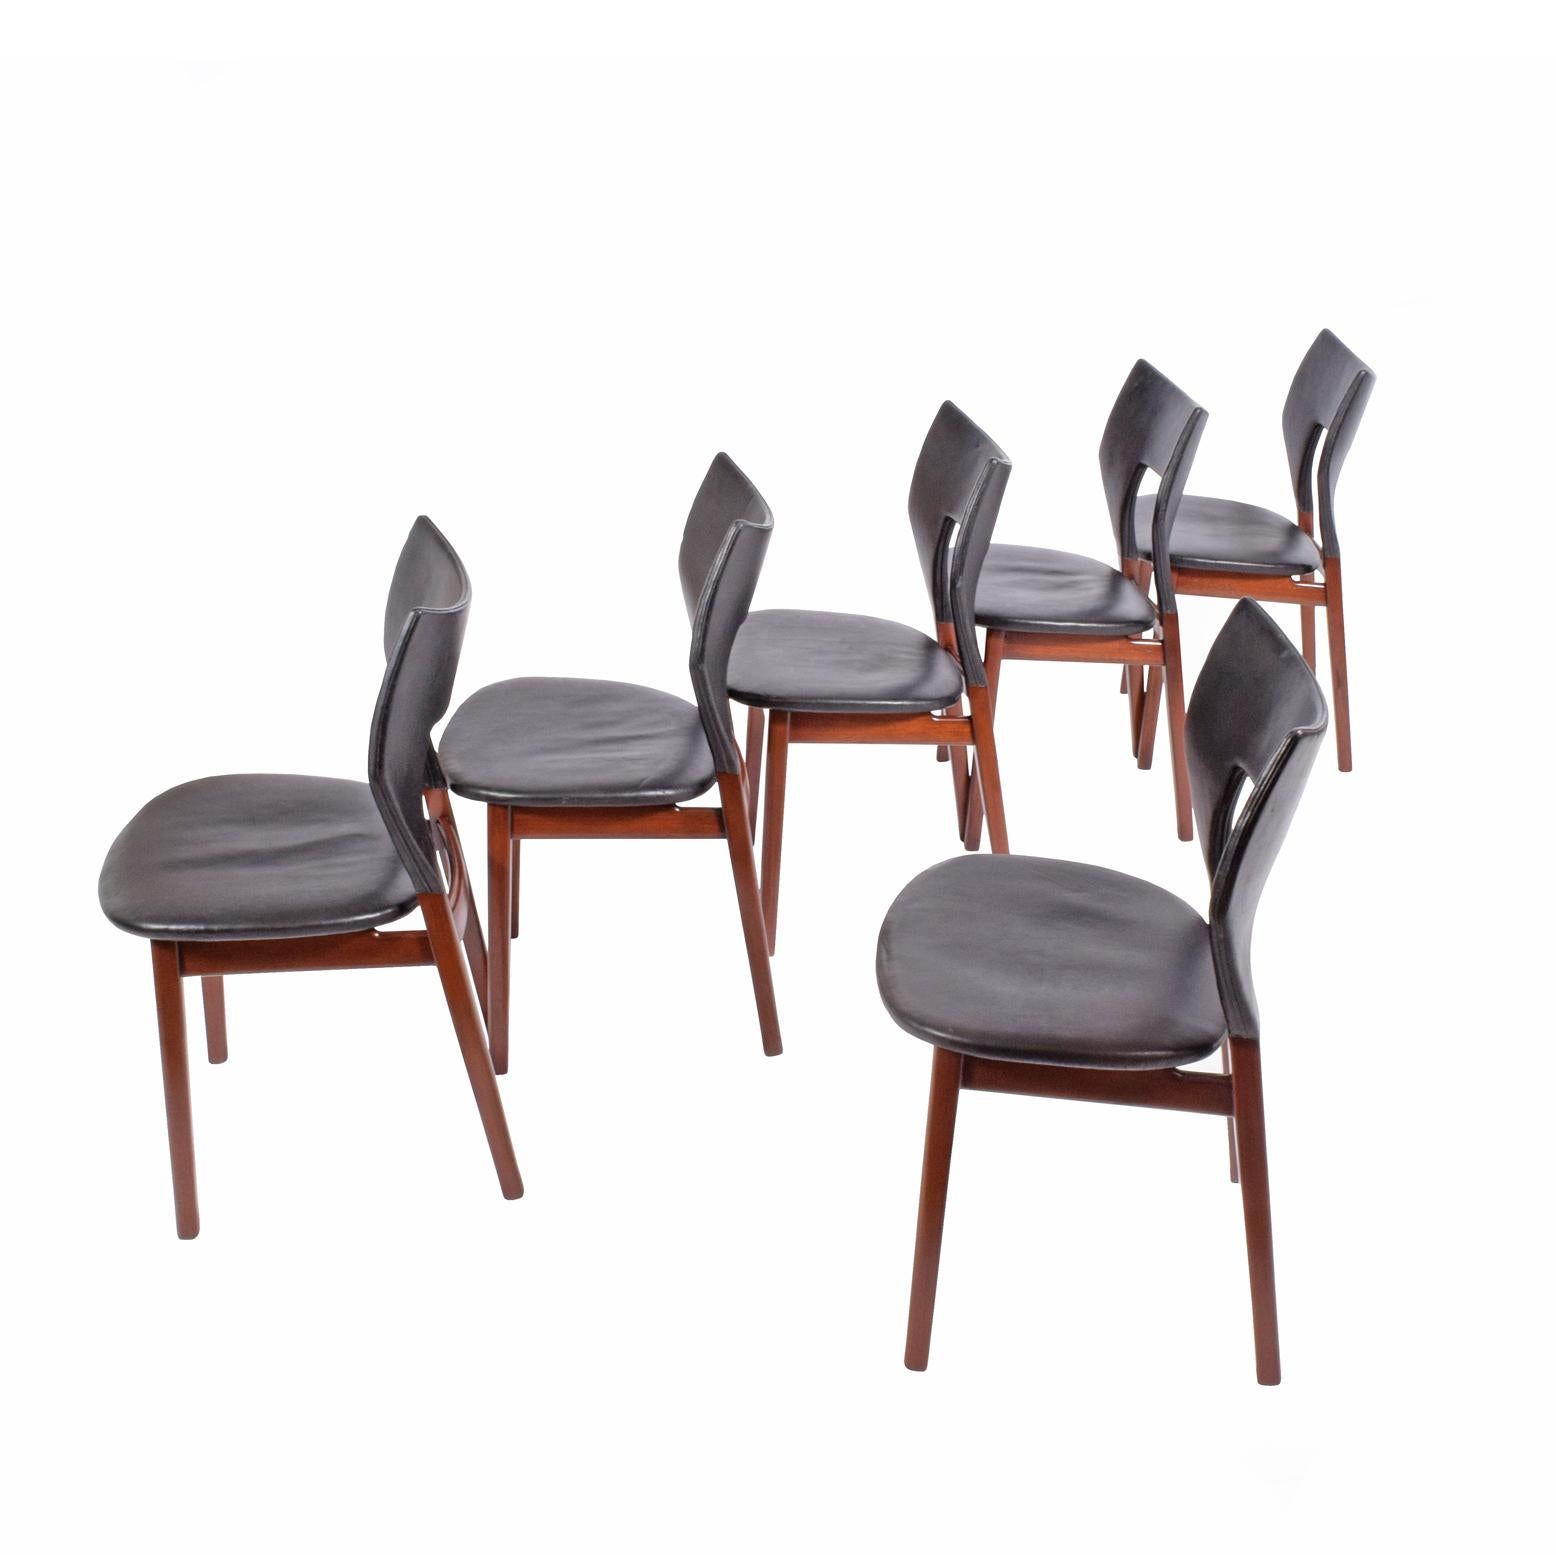 Massives Teakholz seltenen Satz von sechs Esszimmerstühle Design für Tischler Thorald Madsen von Tove & Edvard Kind- Larsen im Jahr 1960 zum ersten Mal auf der Guild Exhibition jeder Stuhl mit Metall-Tag Original-Leder markiert.